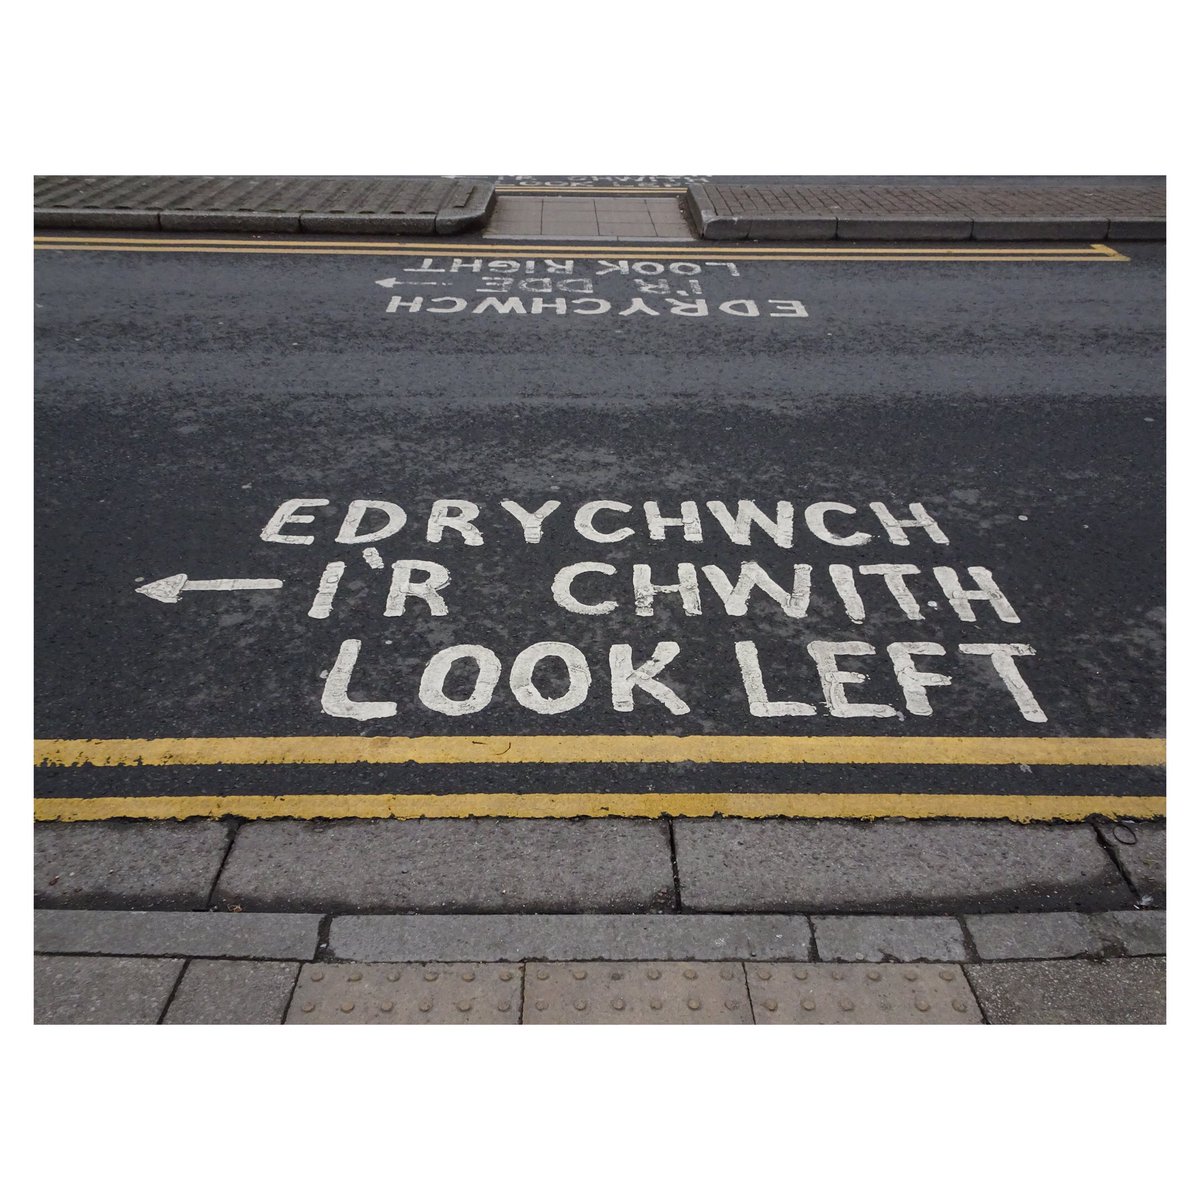 28/04/2024 (+)

#aberystwyth #ceredigion #midwales #canolbarthcymru #cymru #wales